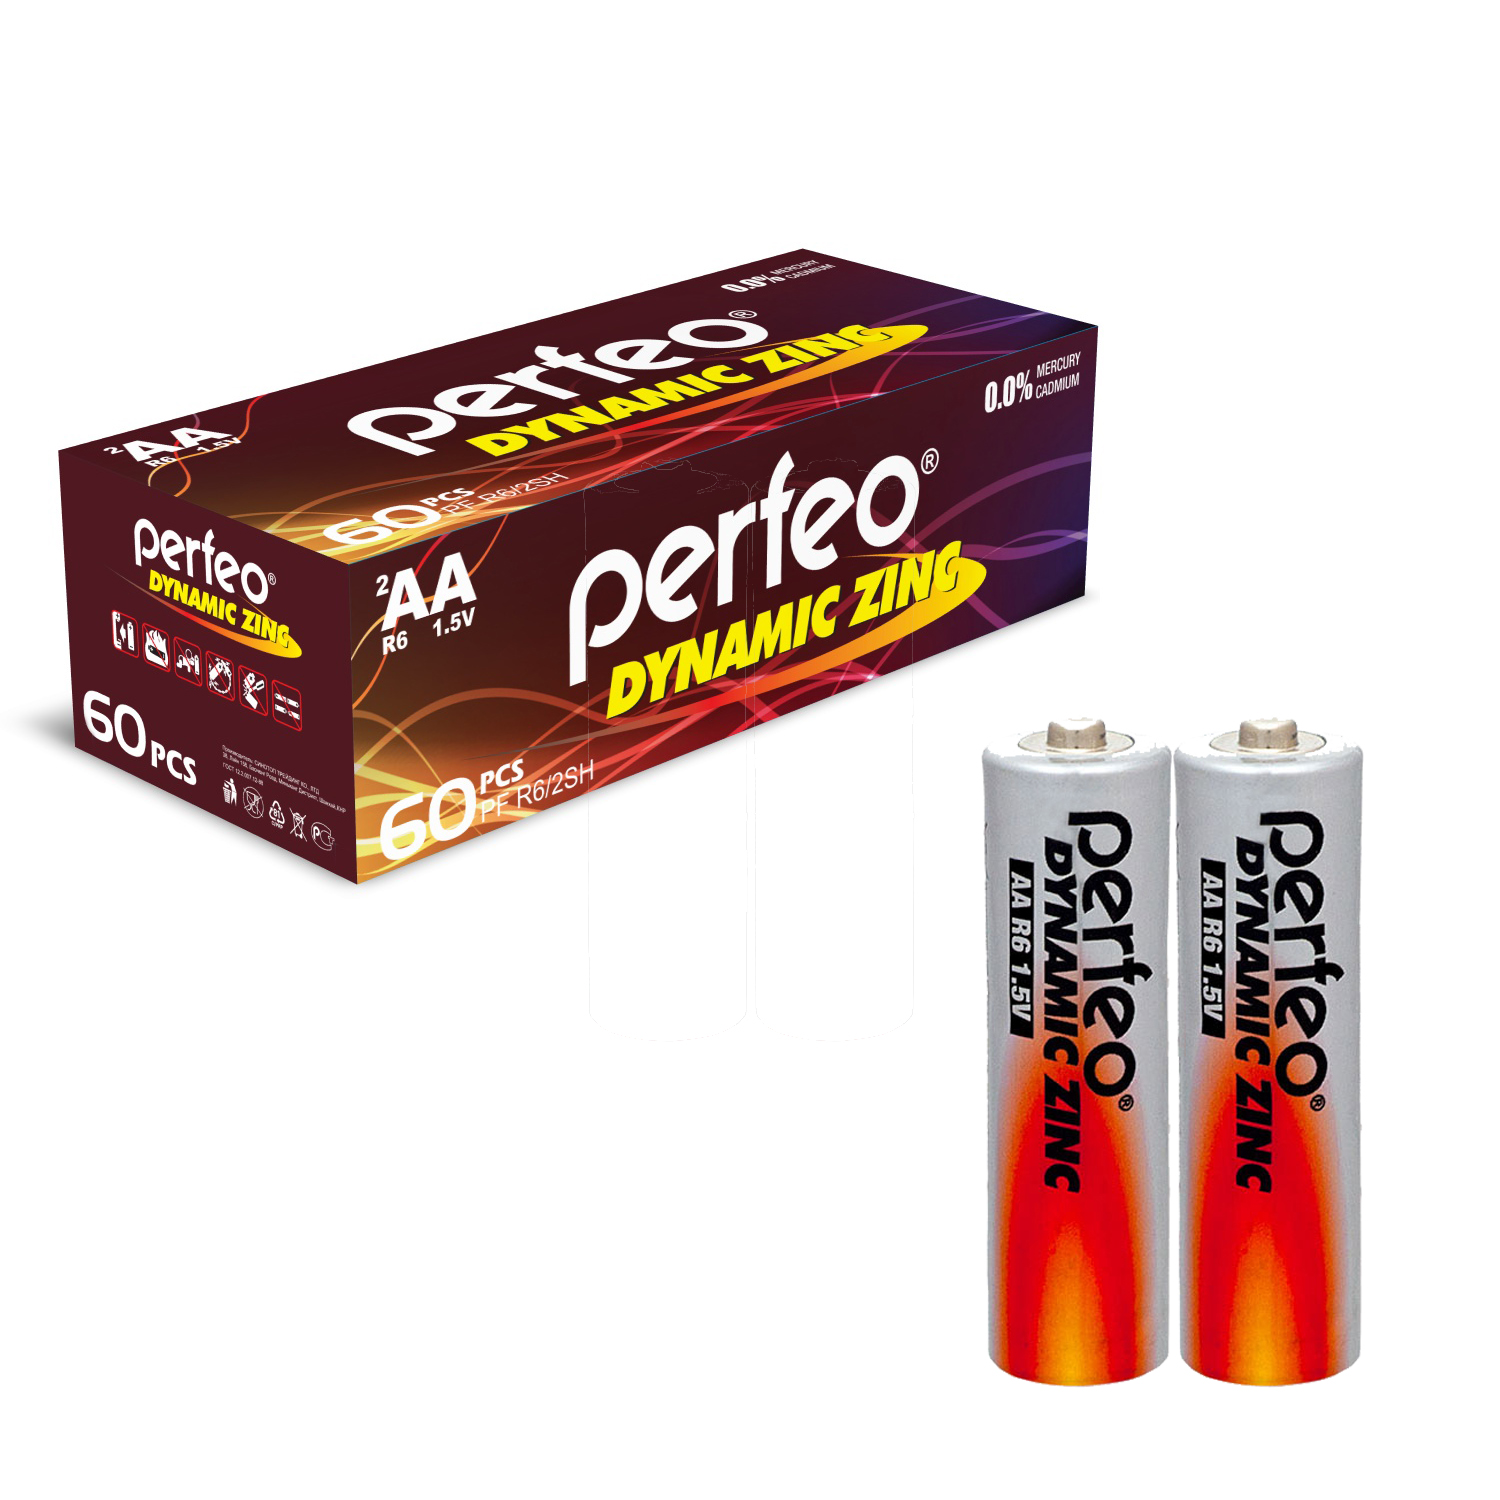 Батарейки Perfeo Dynamic Zinc AA (LR6), 60 шт, 30x2 шт батарейки perfeo dynamic zinc ааа lr03 60 шт 15x4 шт